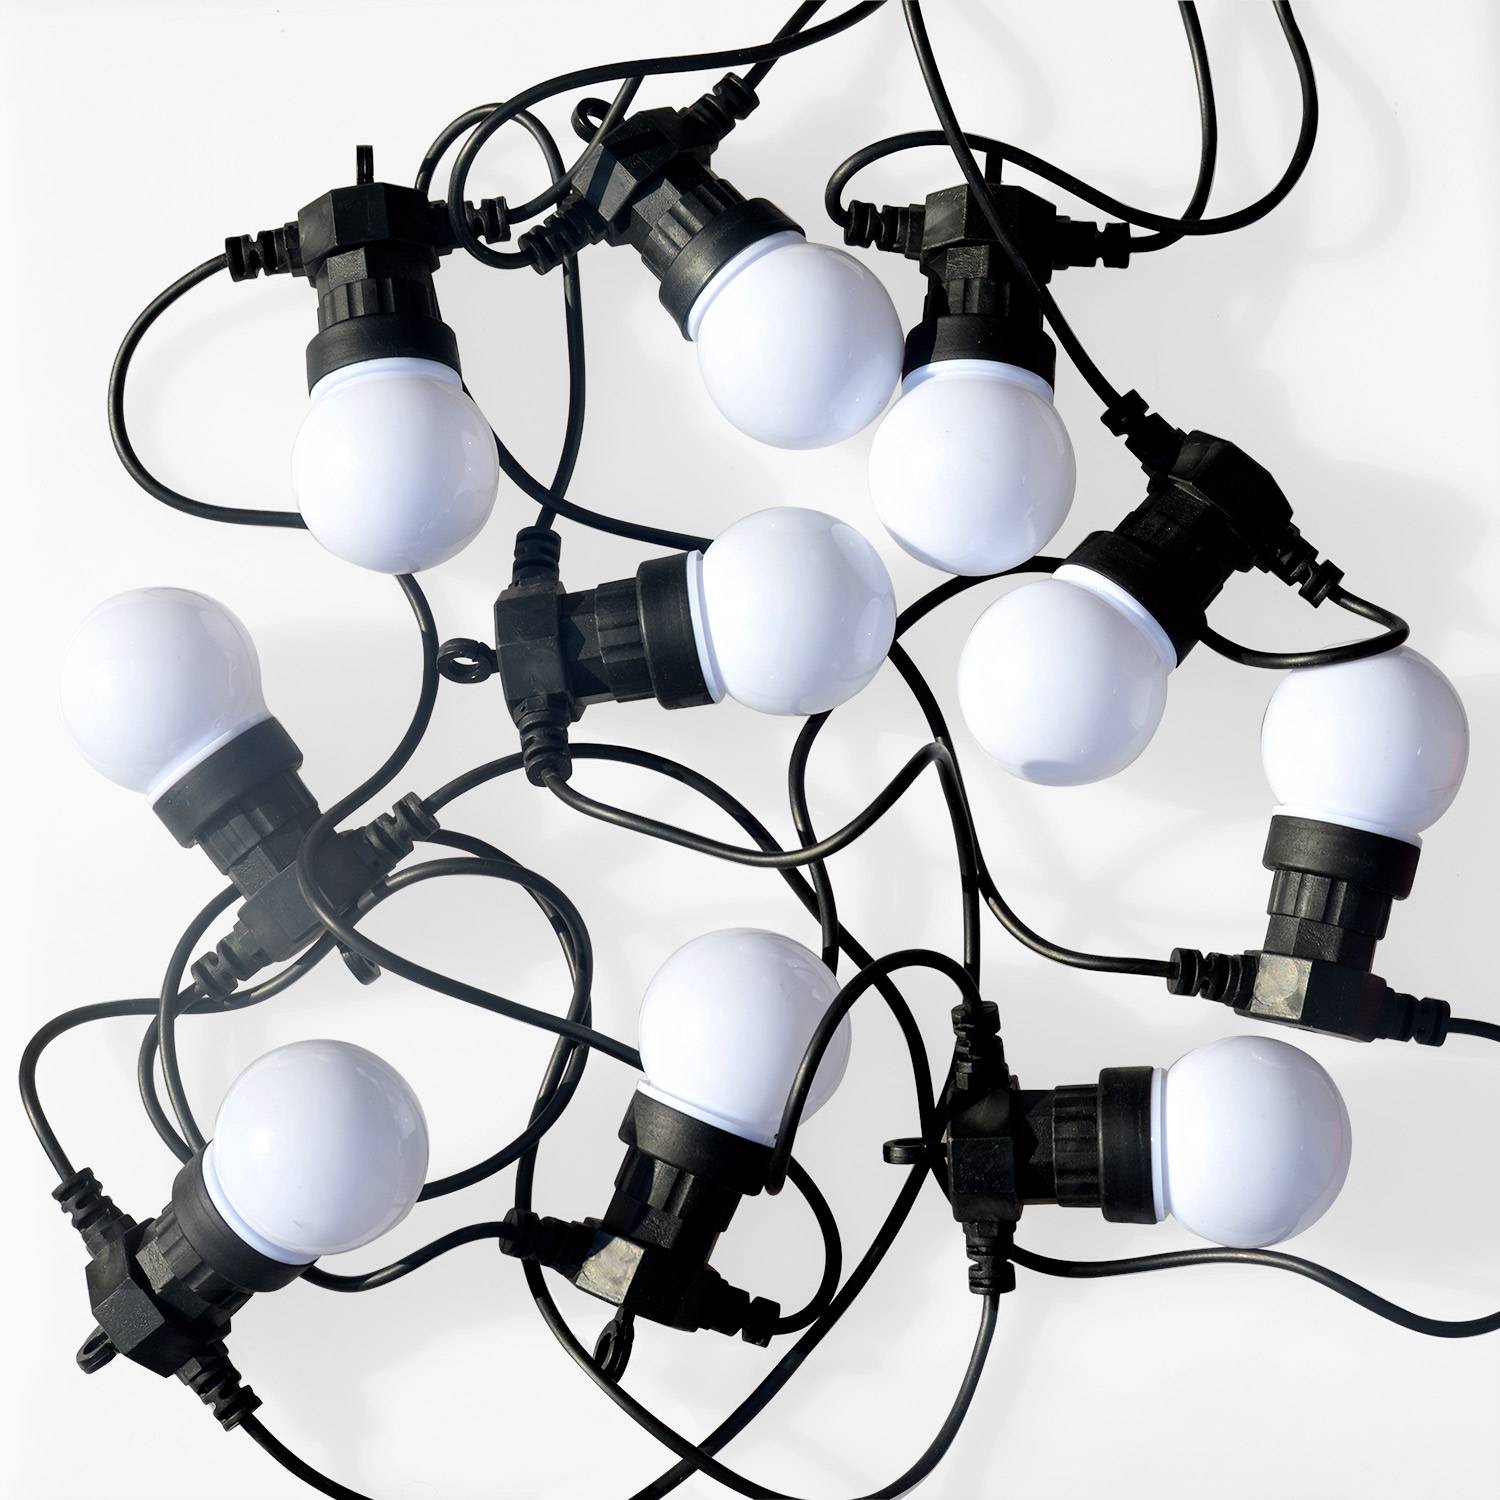 HERACLES - Luz ao ar livre com 10 lâmpadas, 50 LEDs braco, funcionamento a pilhas, função temporizador, 8 modos, 4,5 m de comprimento Photo2